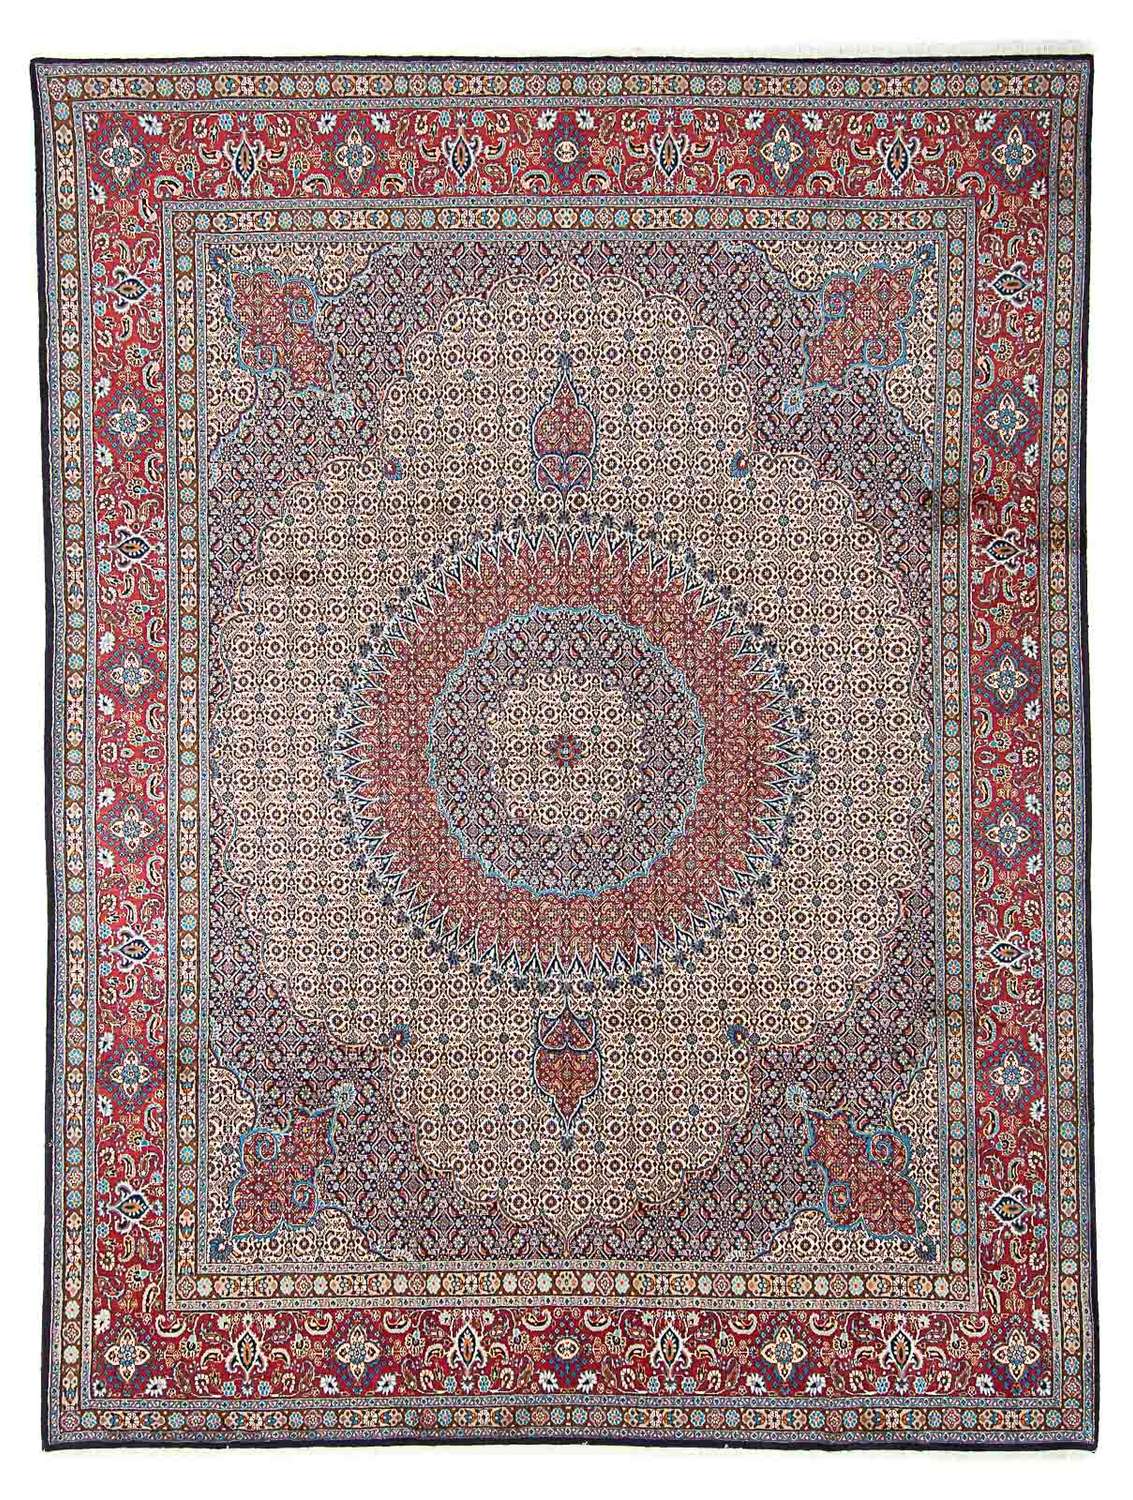 Dywan perski - Klasyczny - 387 x 293 cm - wielokolorowy